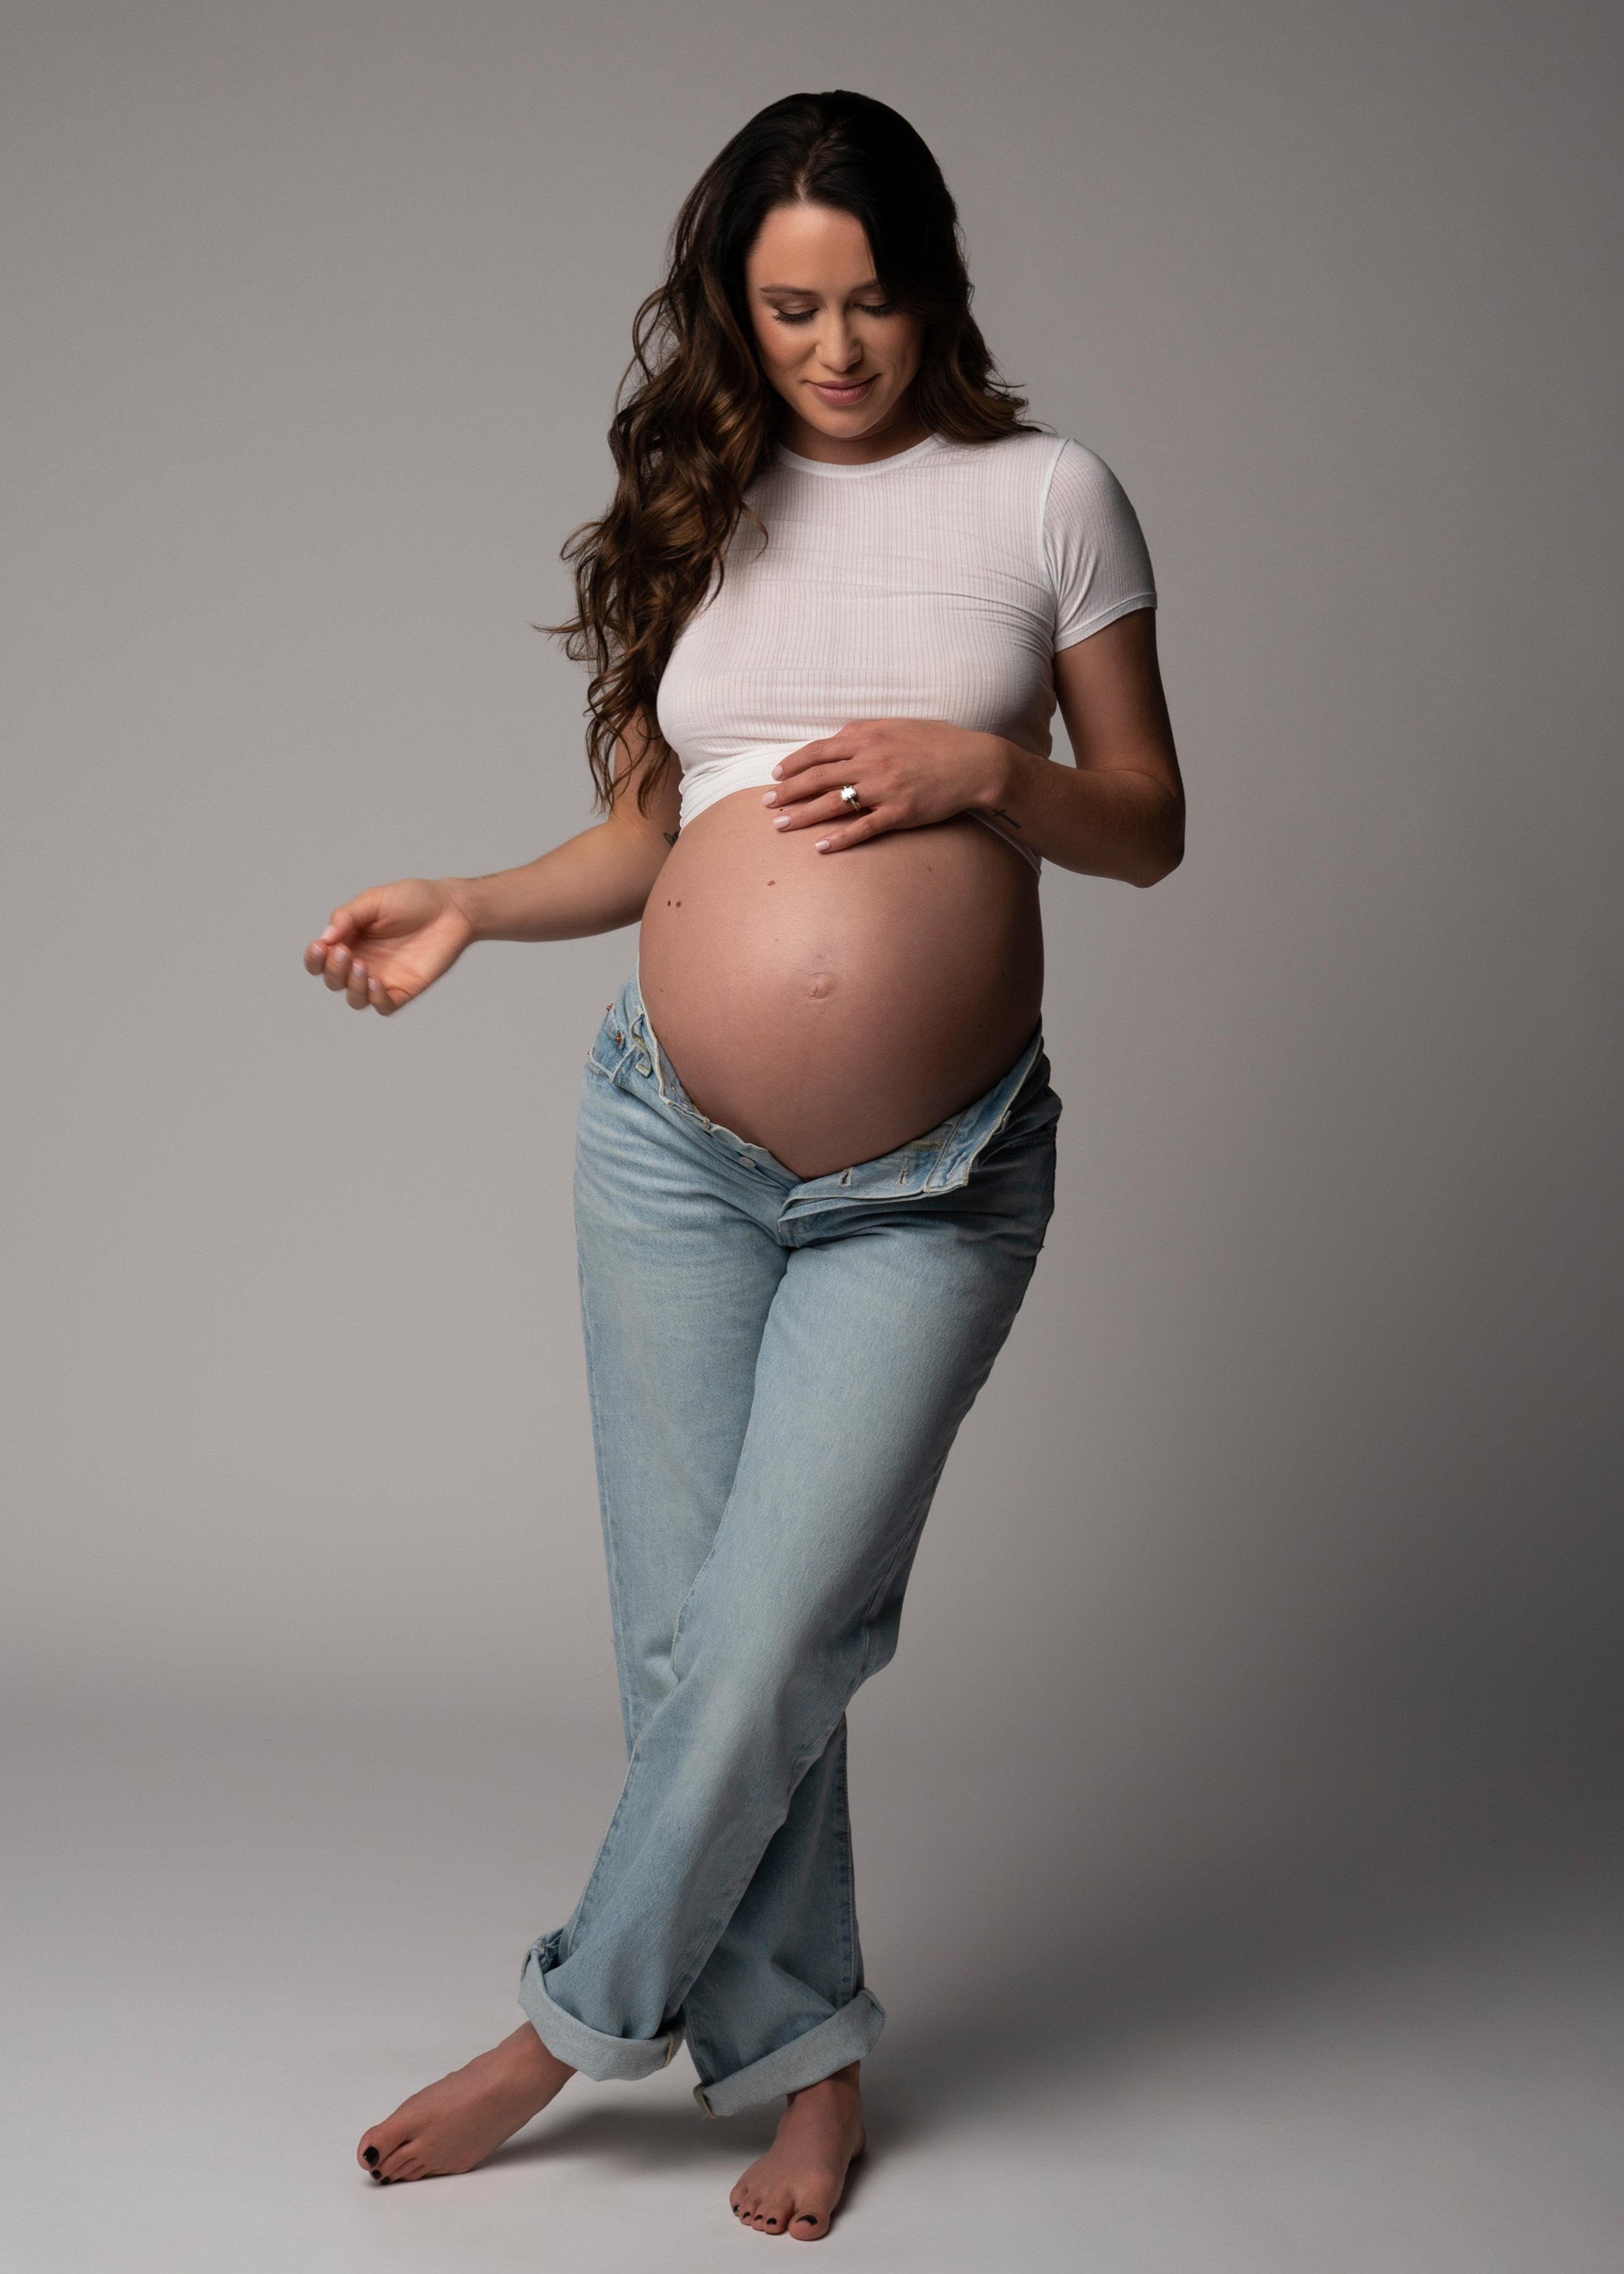 Calvin Klein Inspired Maternity Shoot000007.jpg